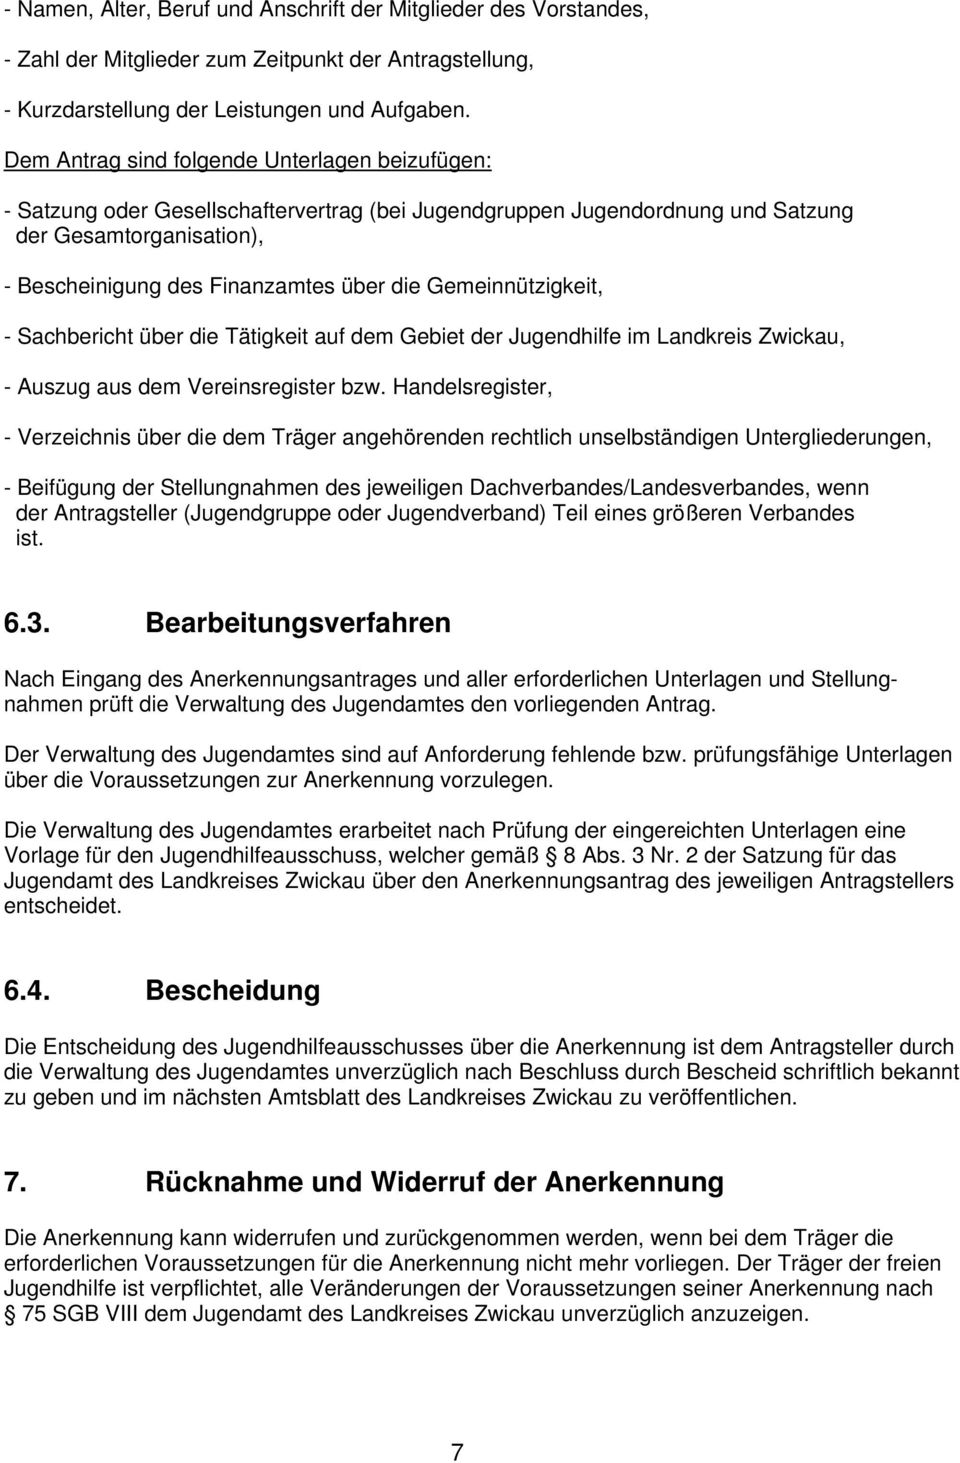 Gemeinnützigkeit, - Sachbericht über die Tätigkeit auf dem Gebiet der Jugendhilfe im Landkreis Zwickau, - Auszug aus dem Vereinsregister bzw.